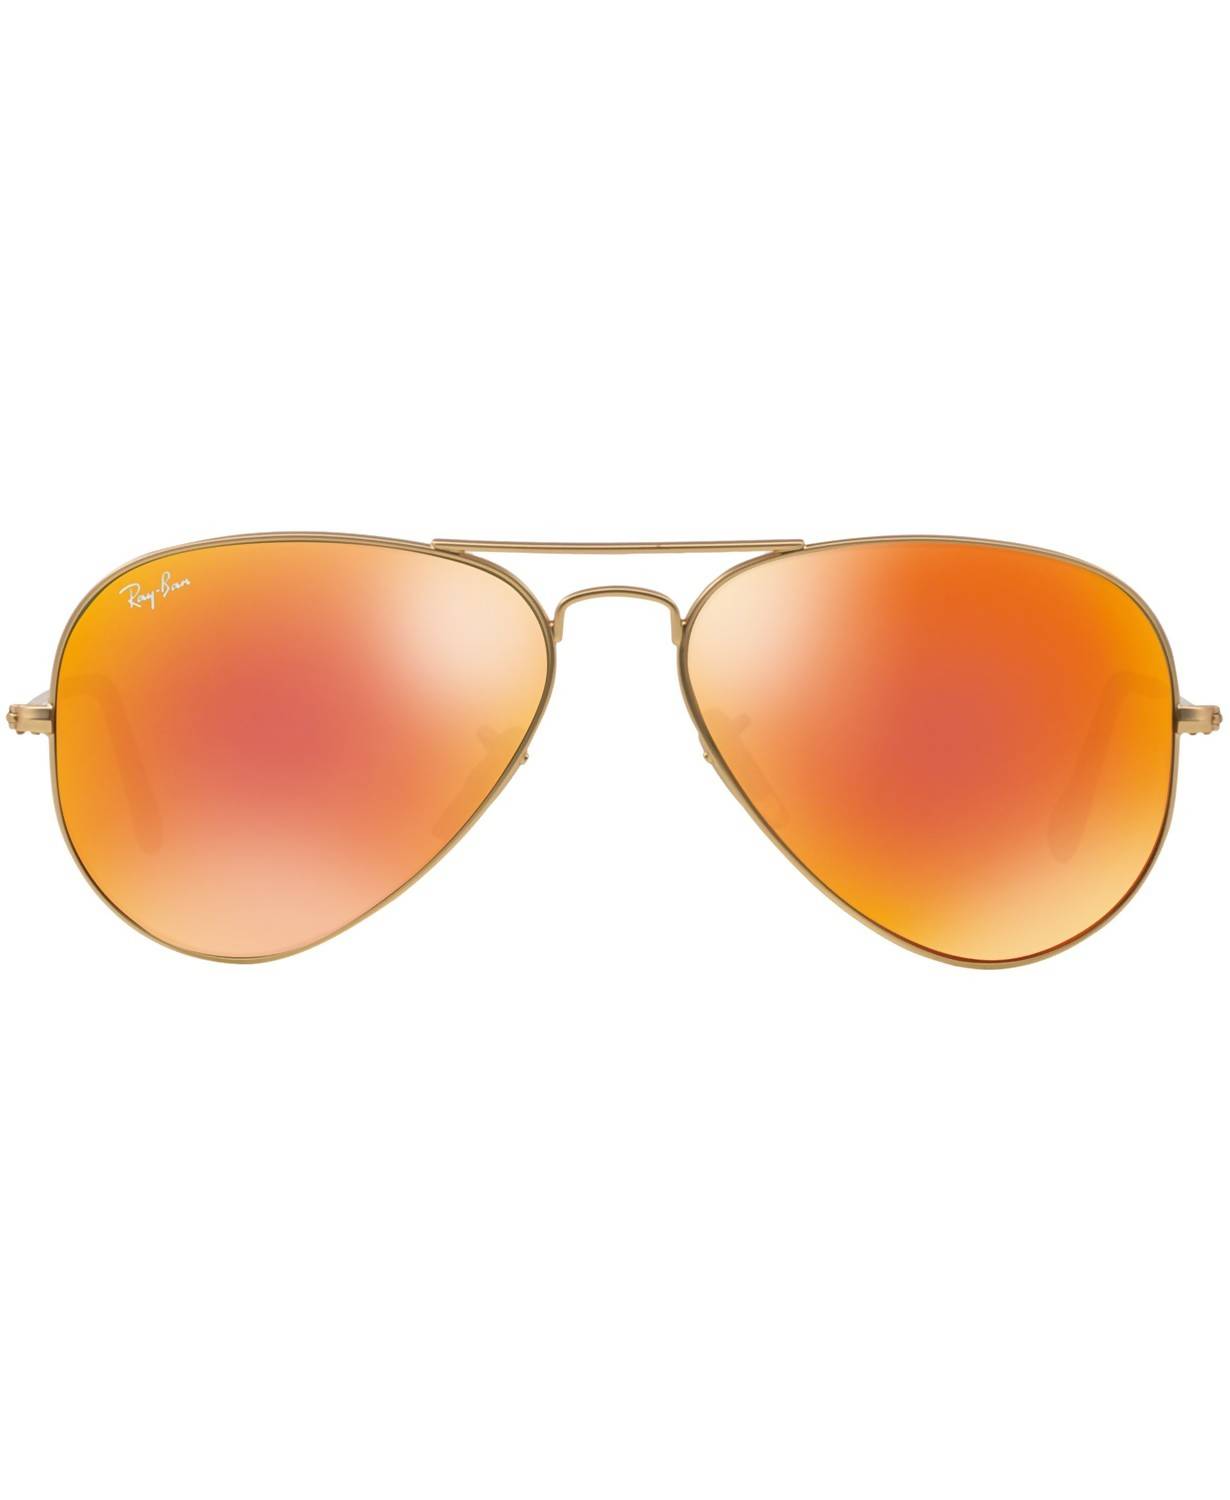 original aviator sunglasses rb3025